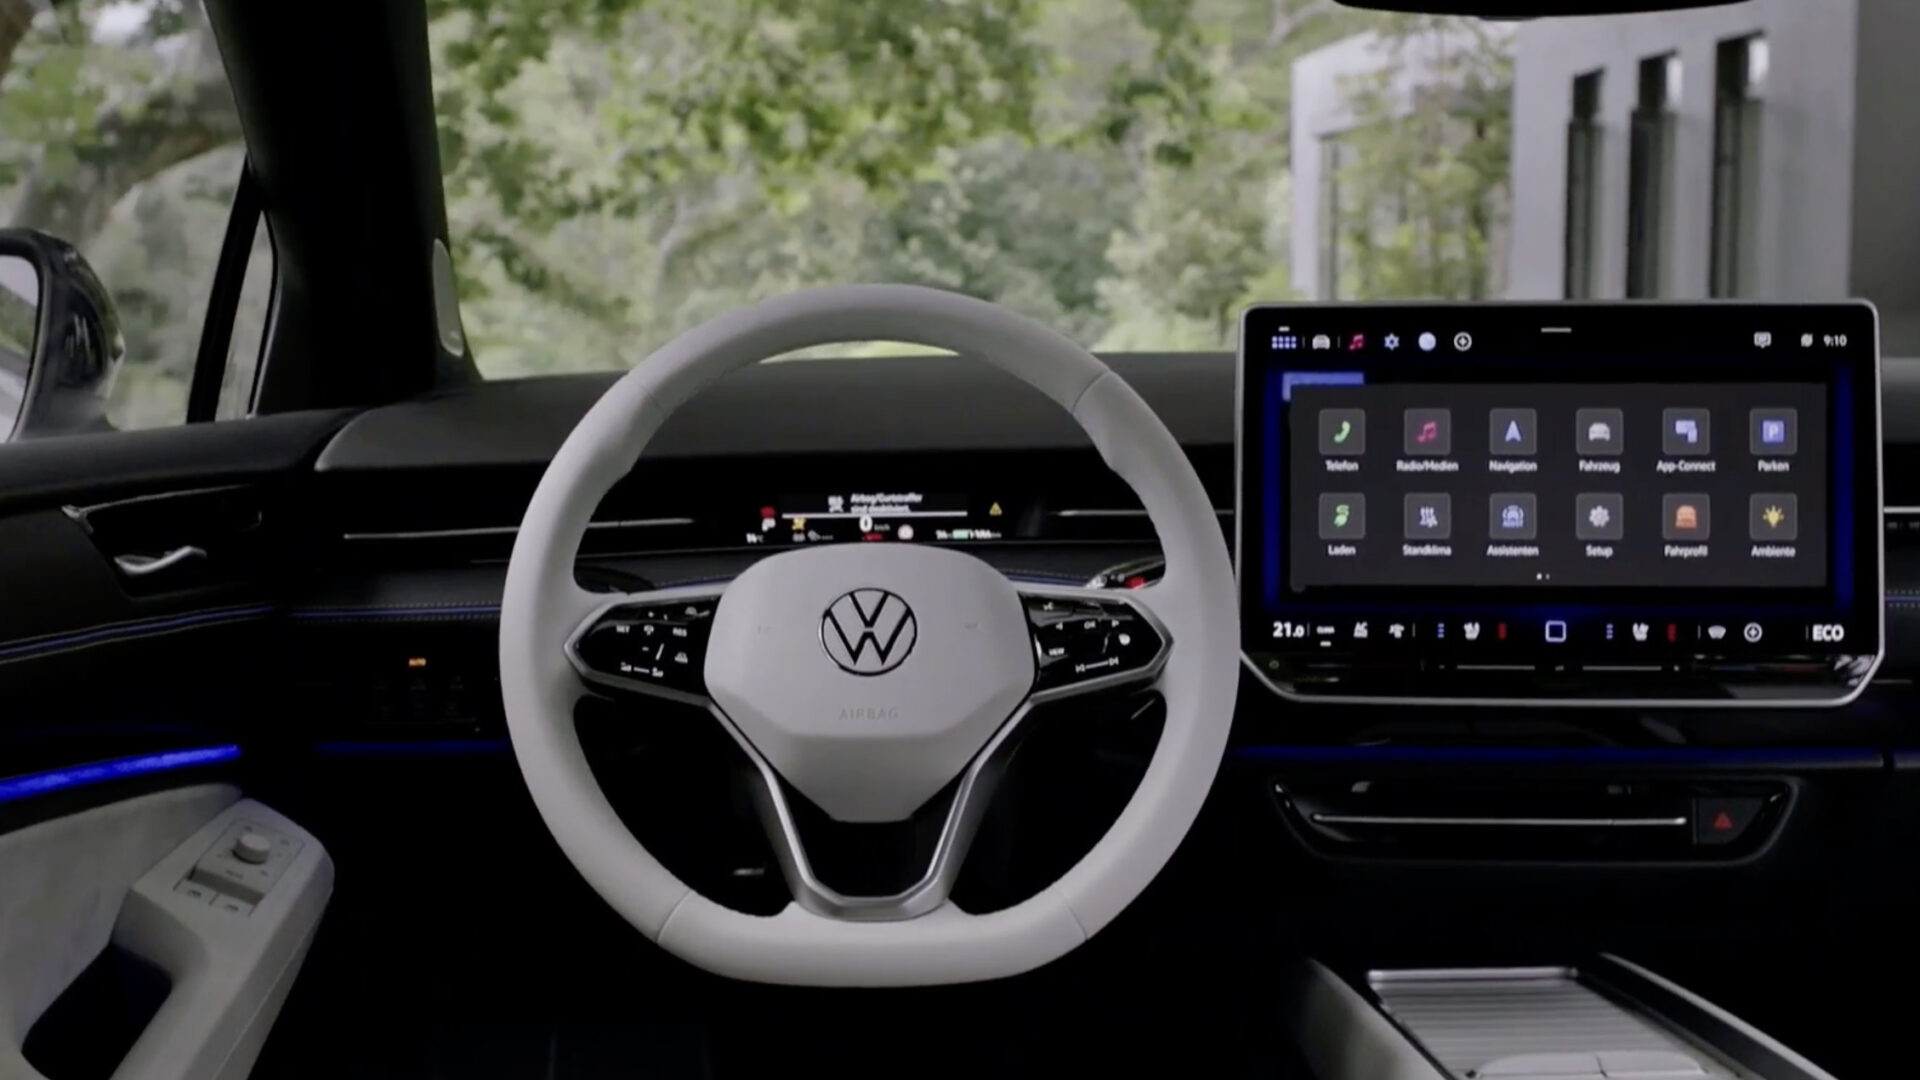 Snart får VW’s biler de fysiske knapper tilbage. Endelig!